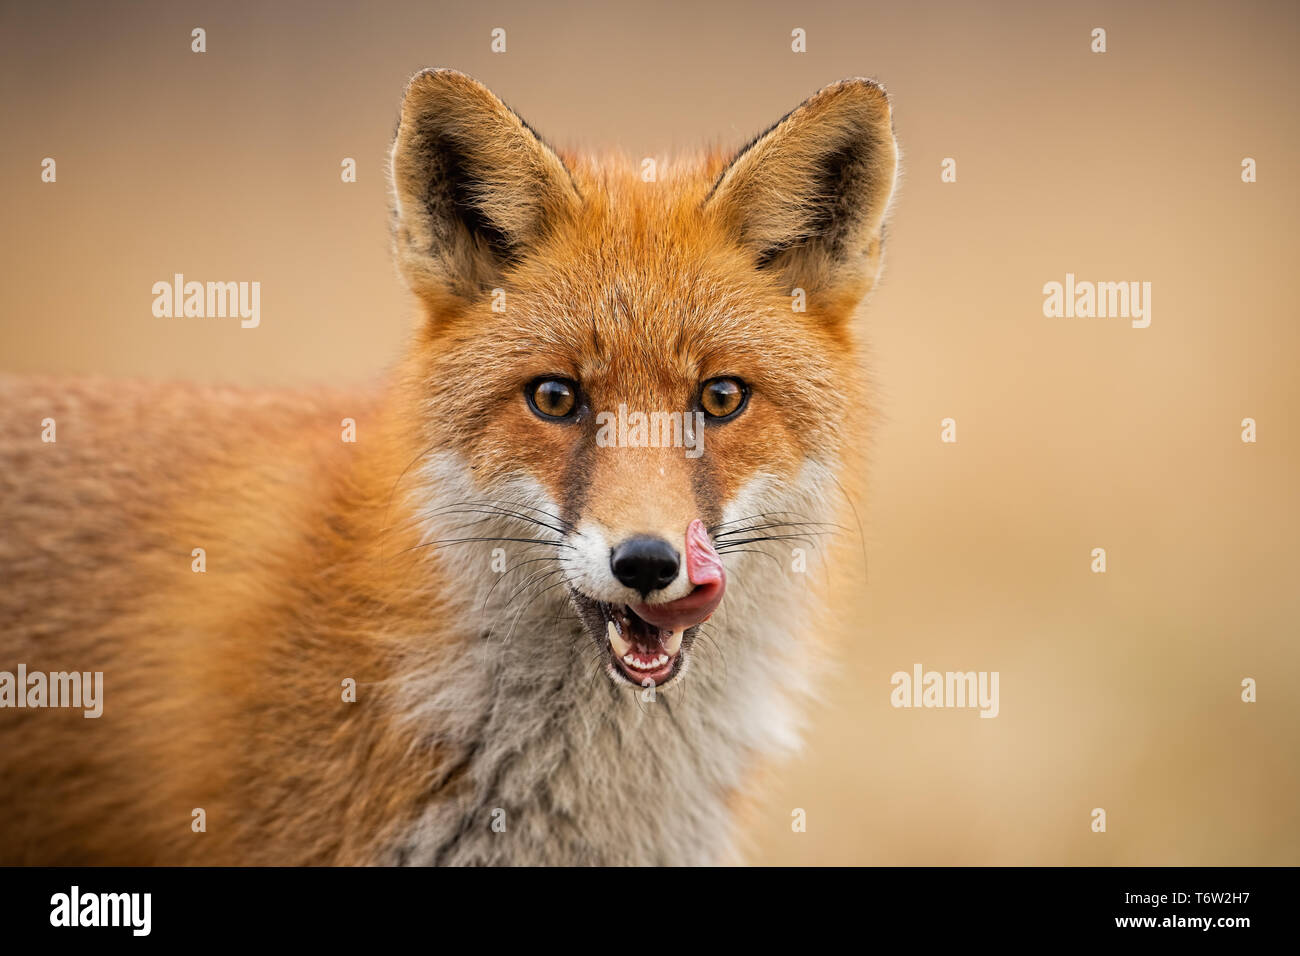 Testa di una volpe rossa, vulpes vulpes, guardando dritto alla telecamera leccare le labbra. Foto Stock